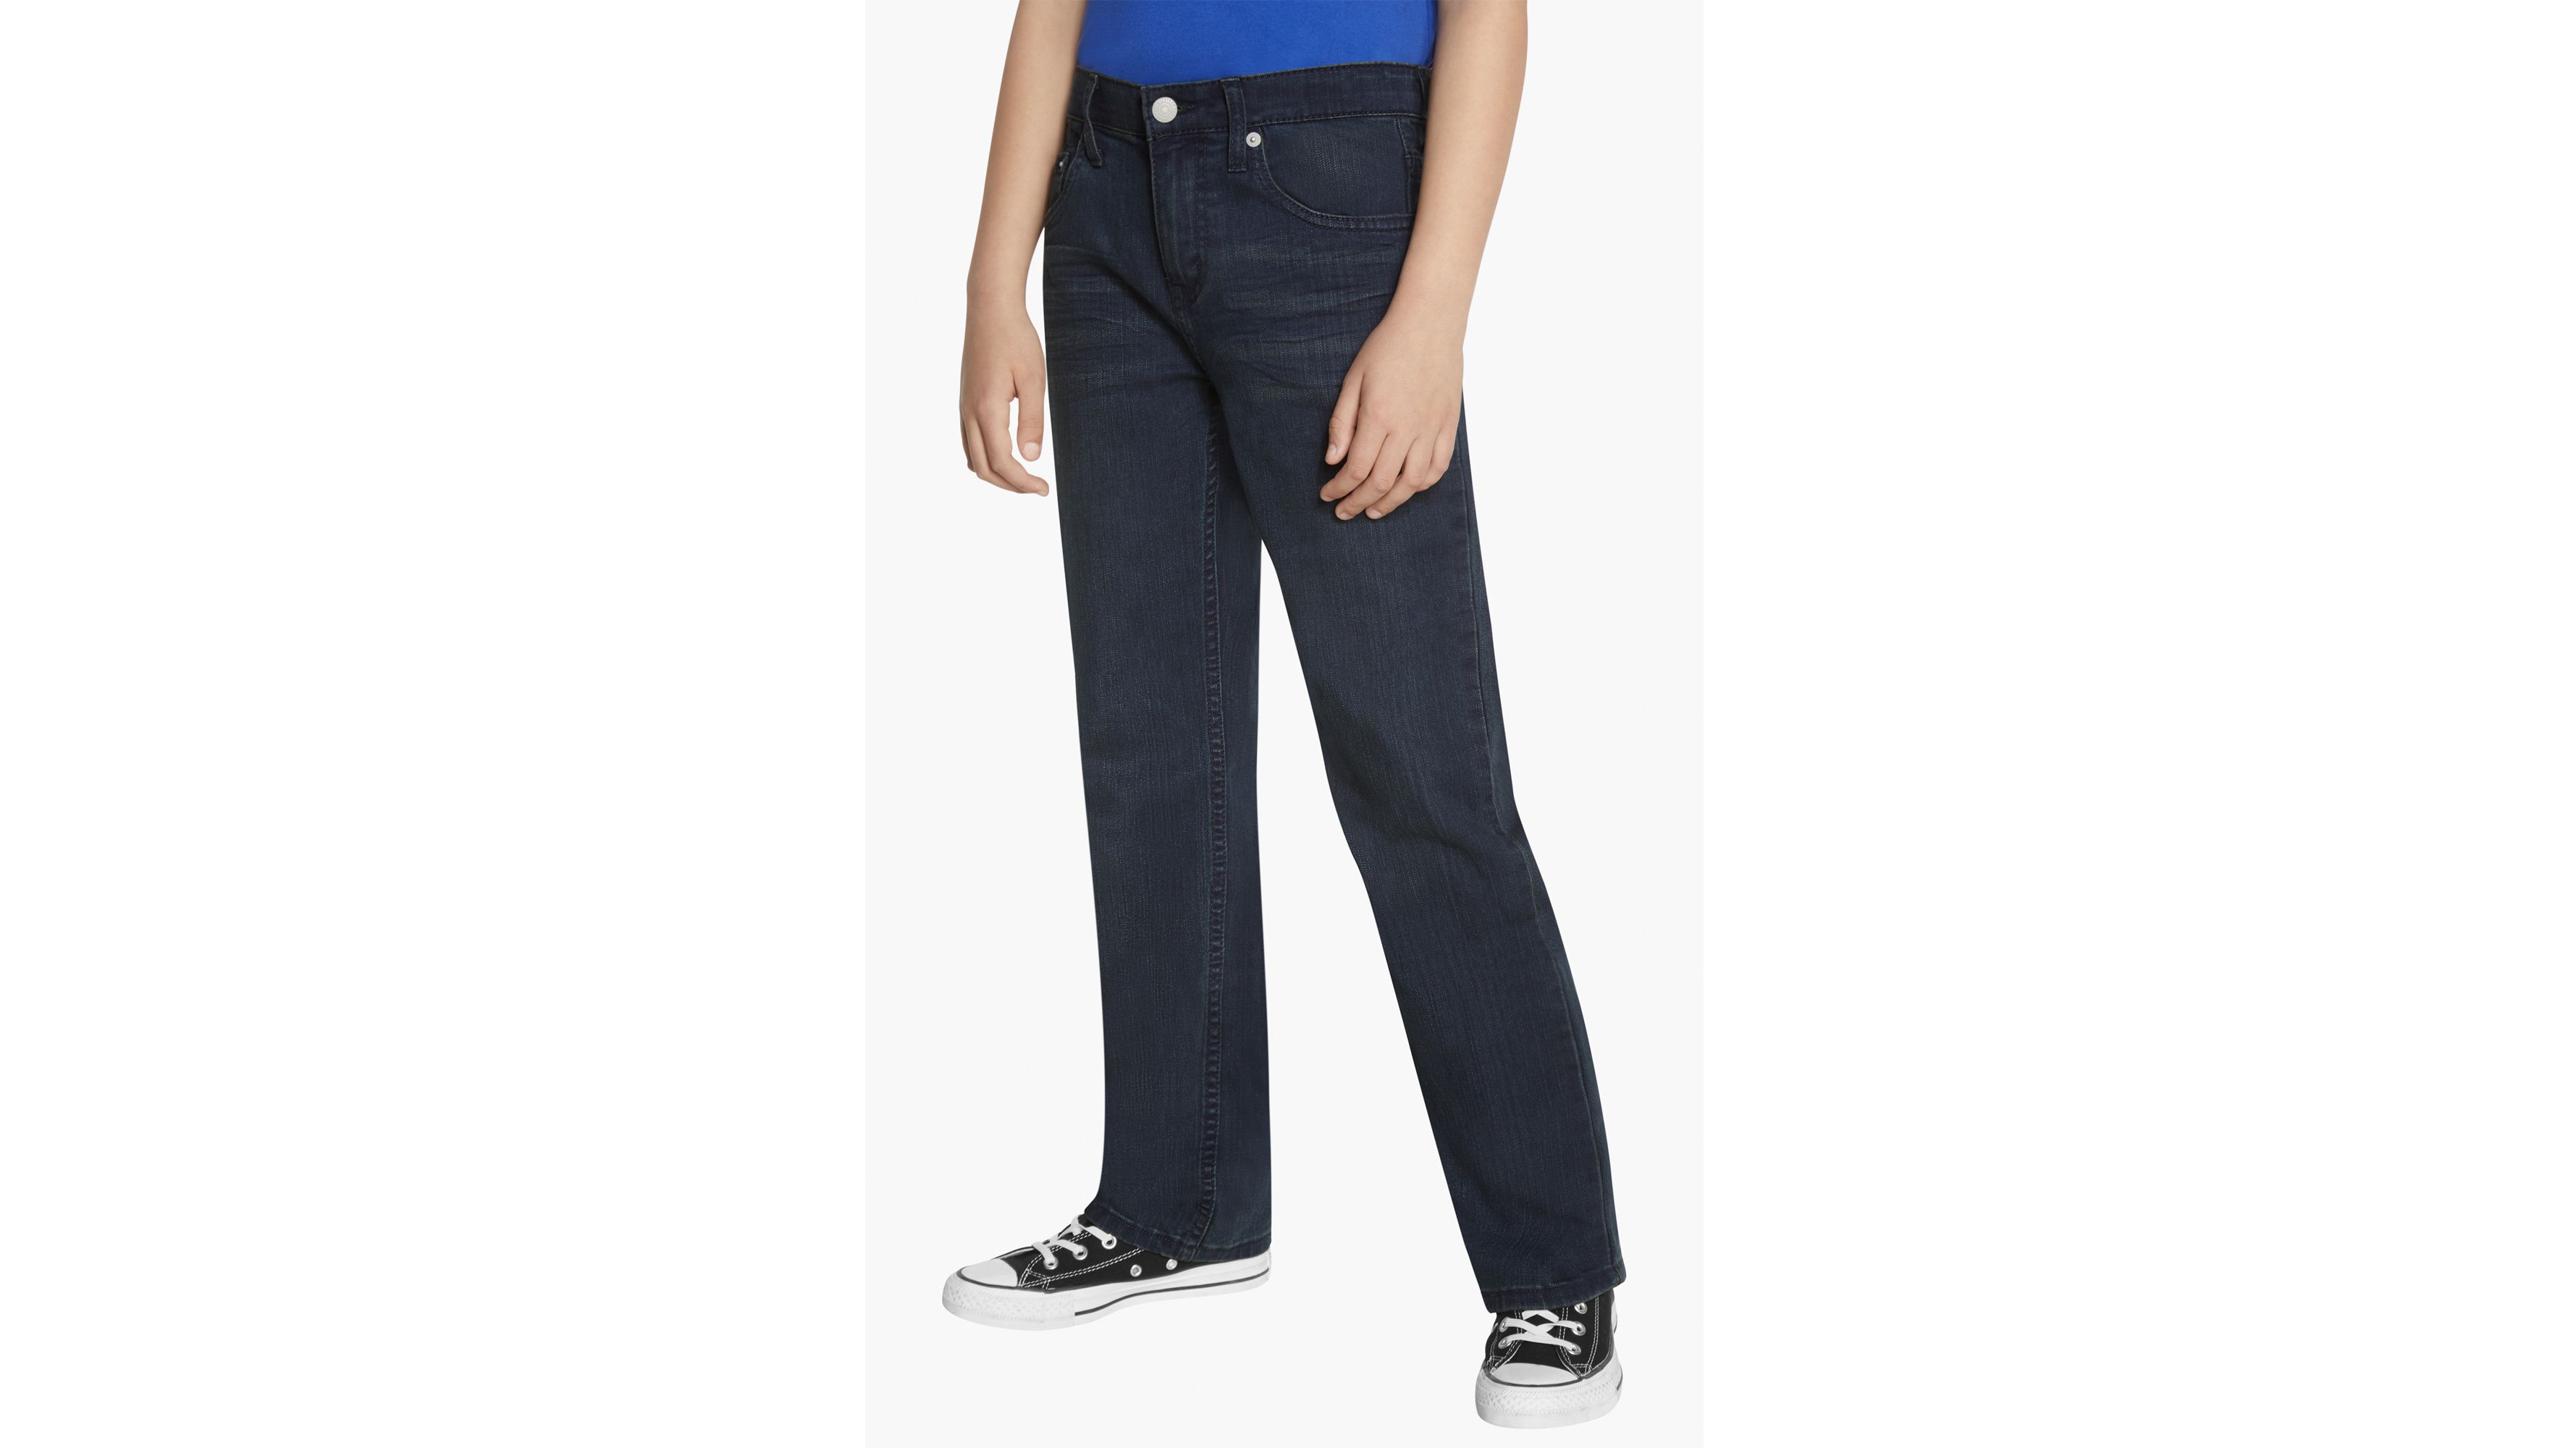 514™ Straight Fit Big Boys Jeans 8-20 - Dark Wash | Levi's® US